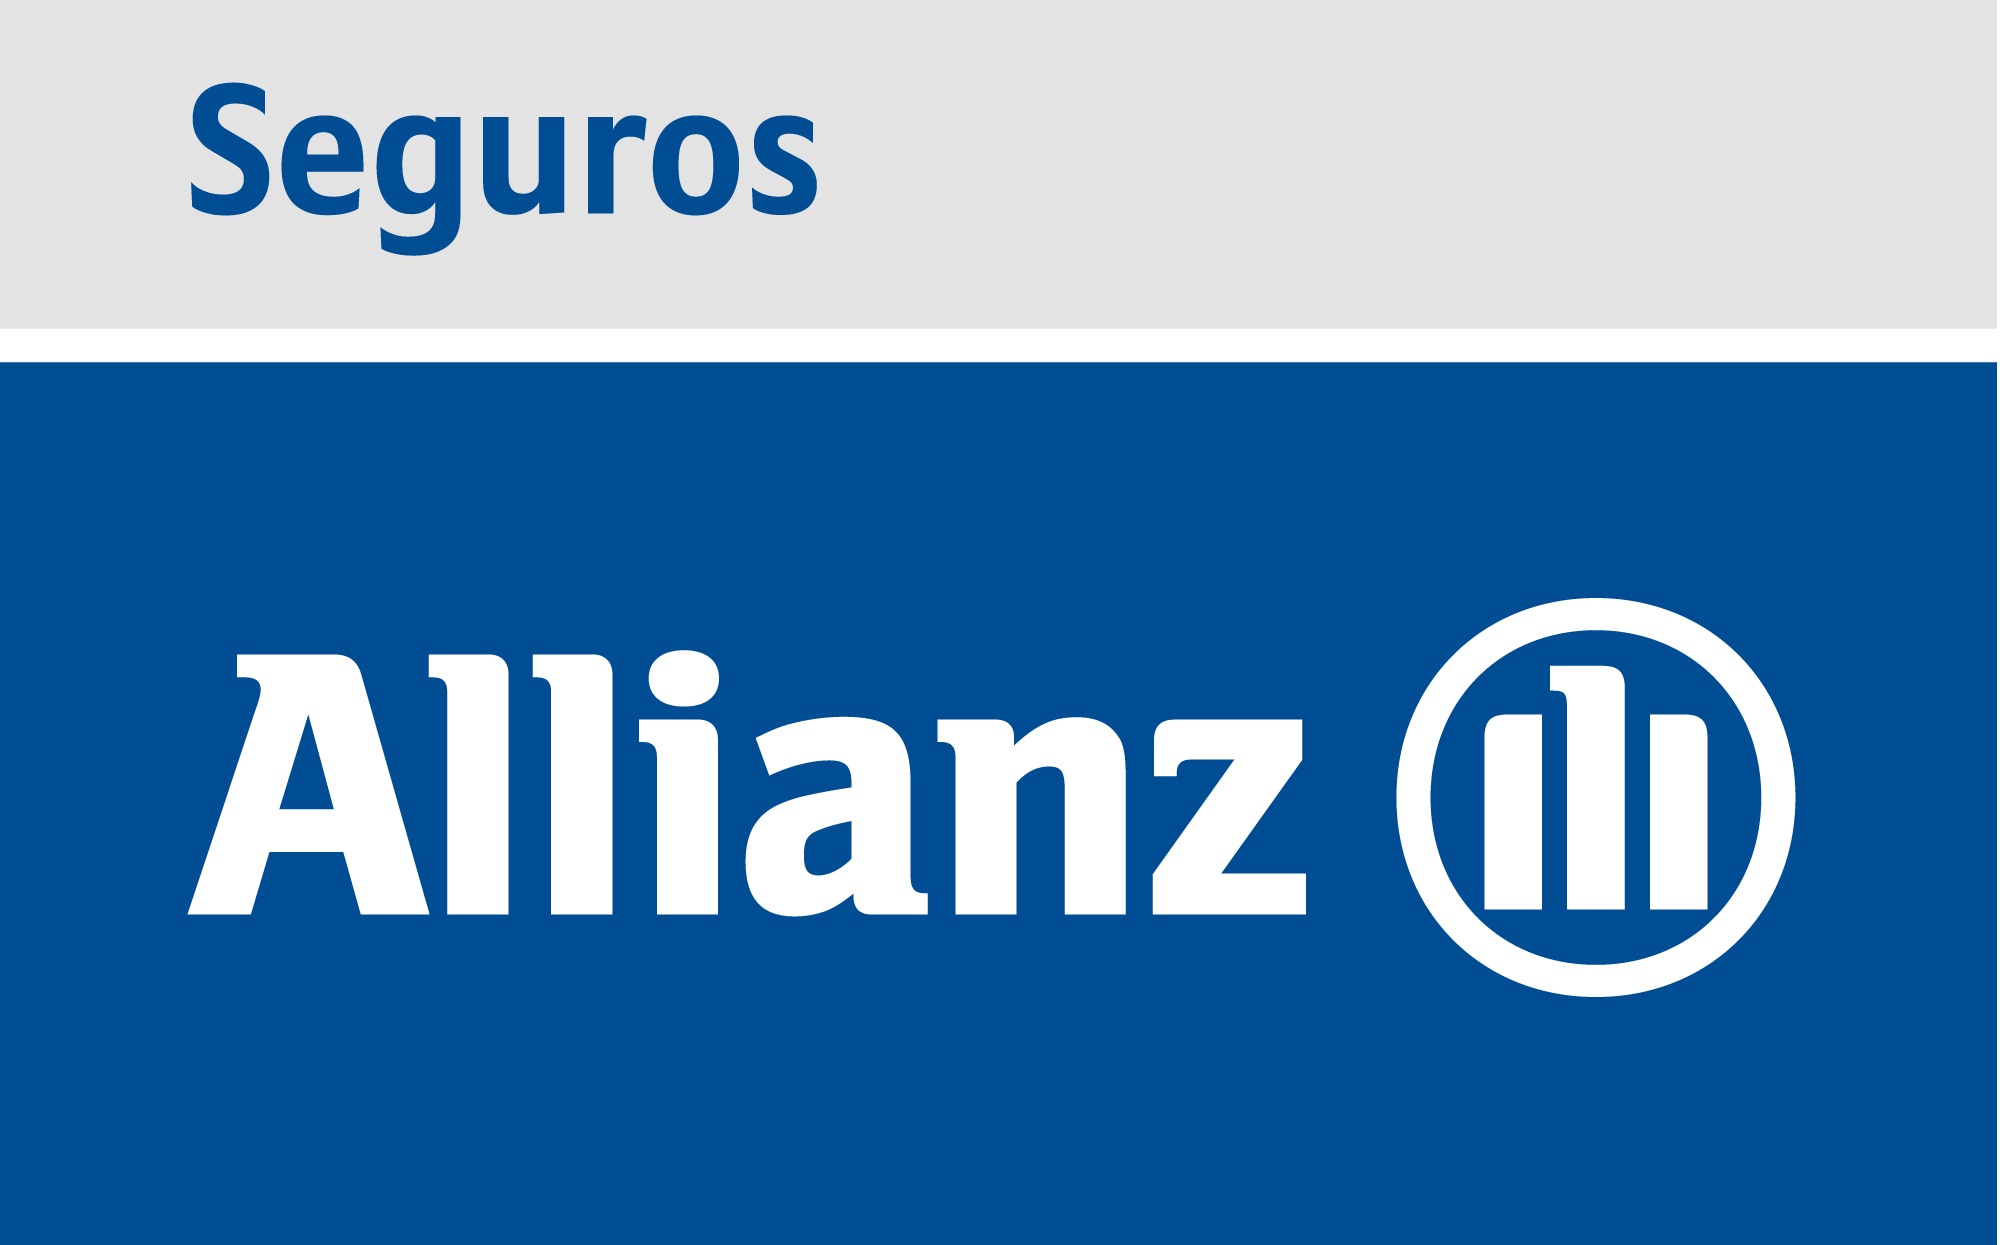 Seguros Allianz favorito en la licitación por el negocio de BBVA Seguros